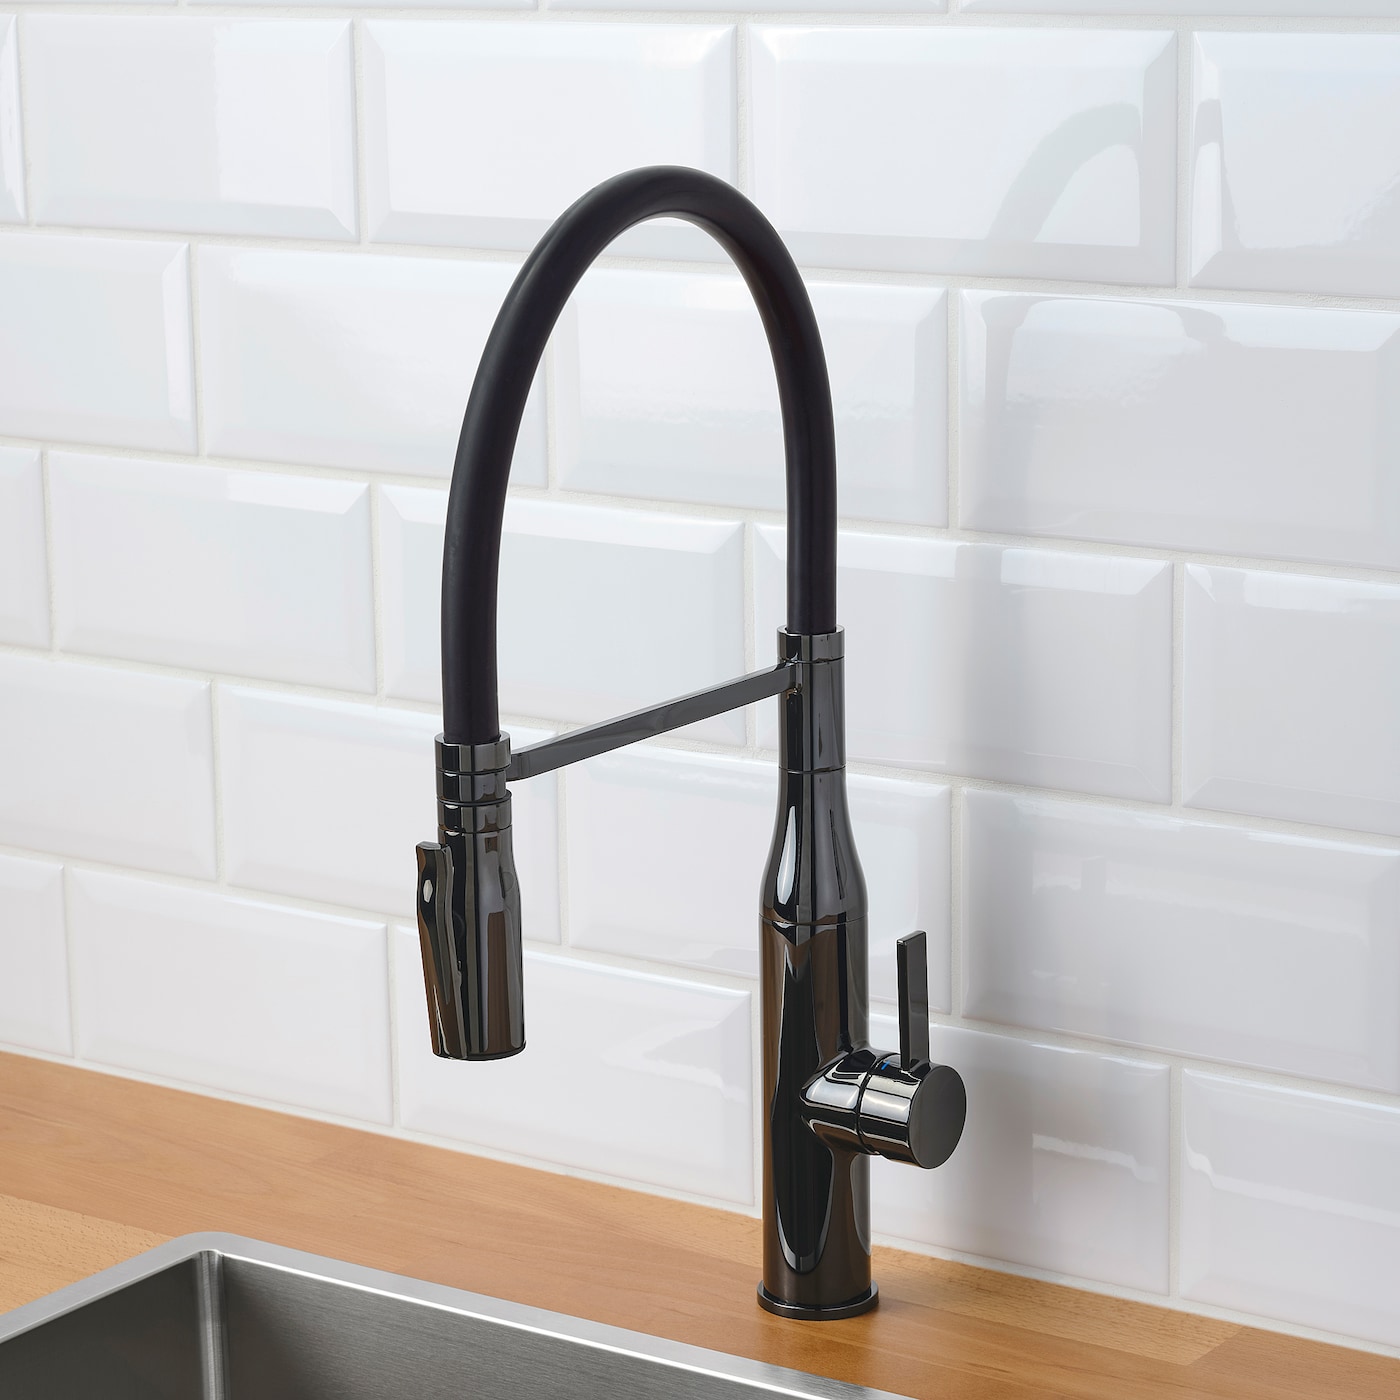 TOLLSJÖN kitchen mixer tap/handspray black polished metal - IKEA